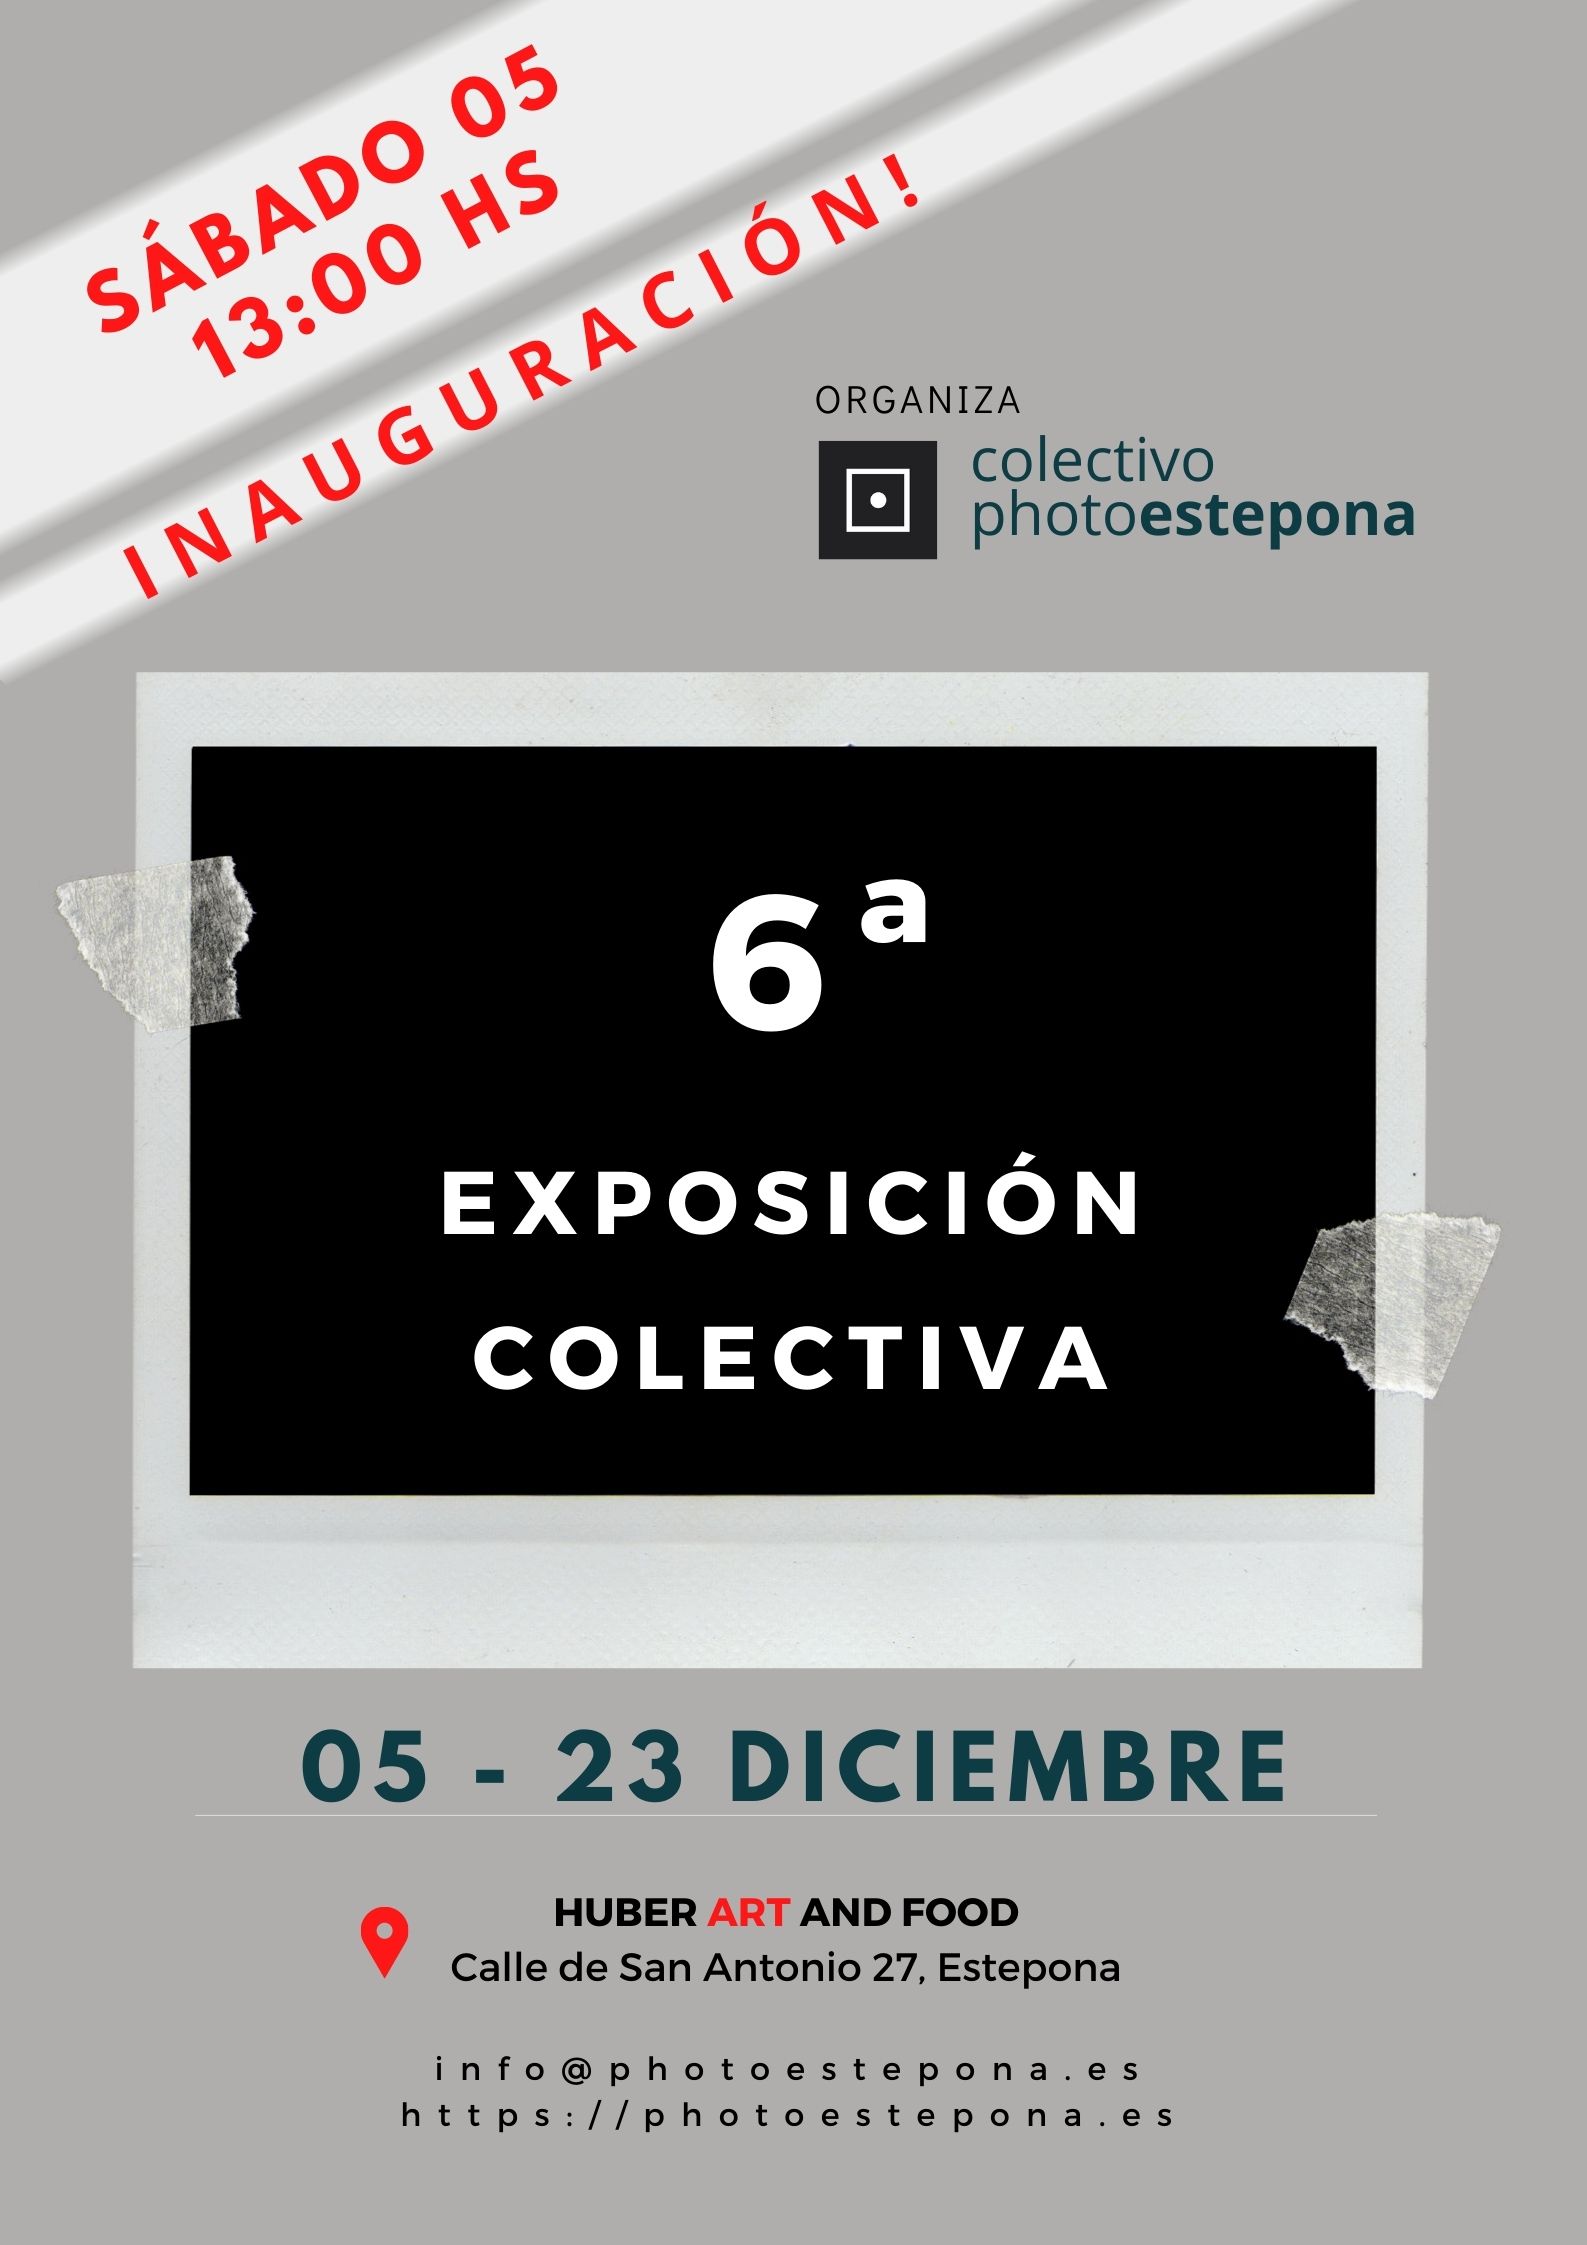 6 Exposición Colectivo Photoestepona